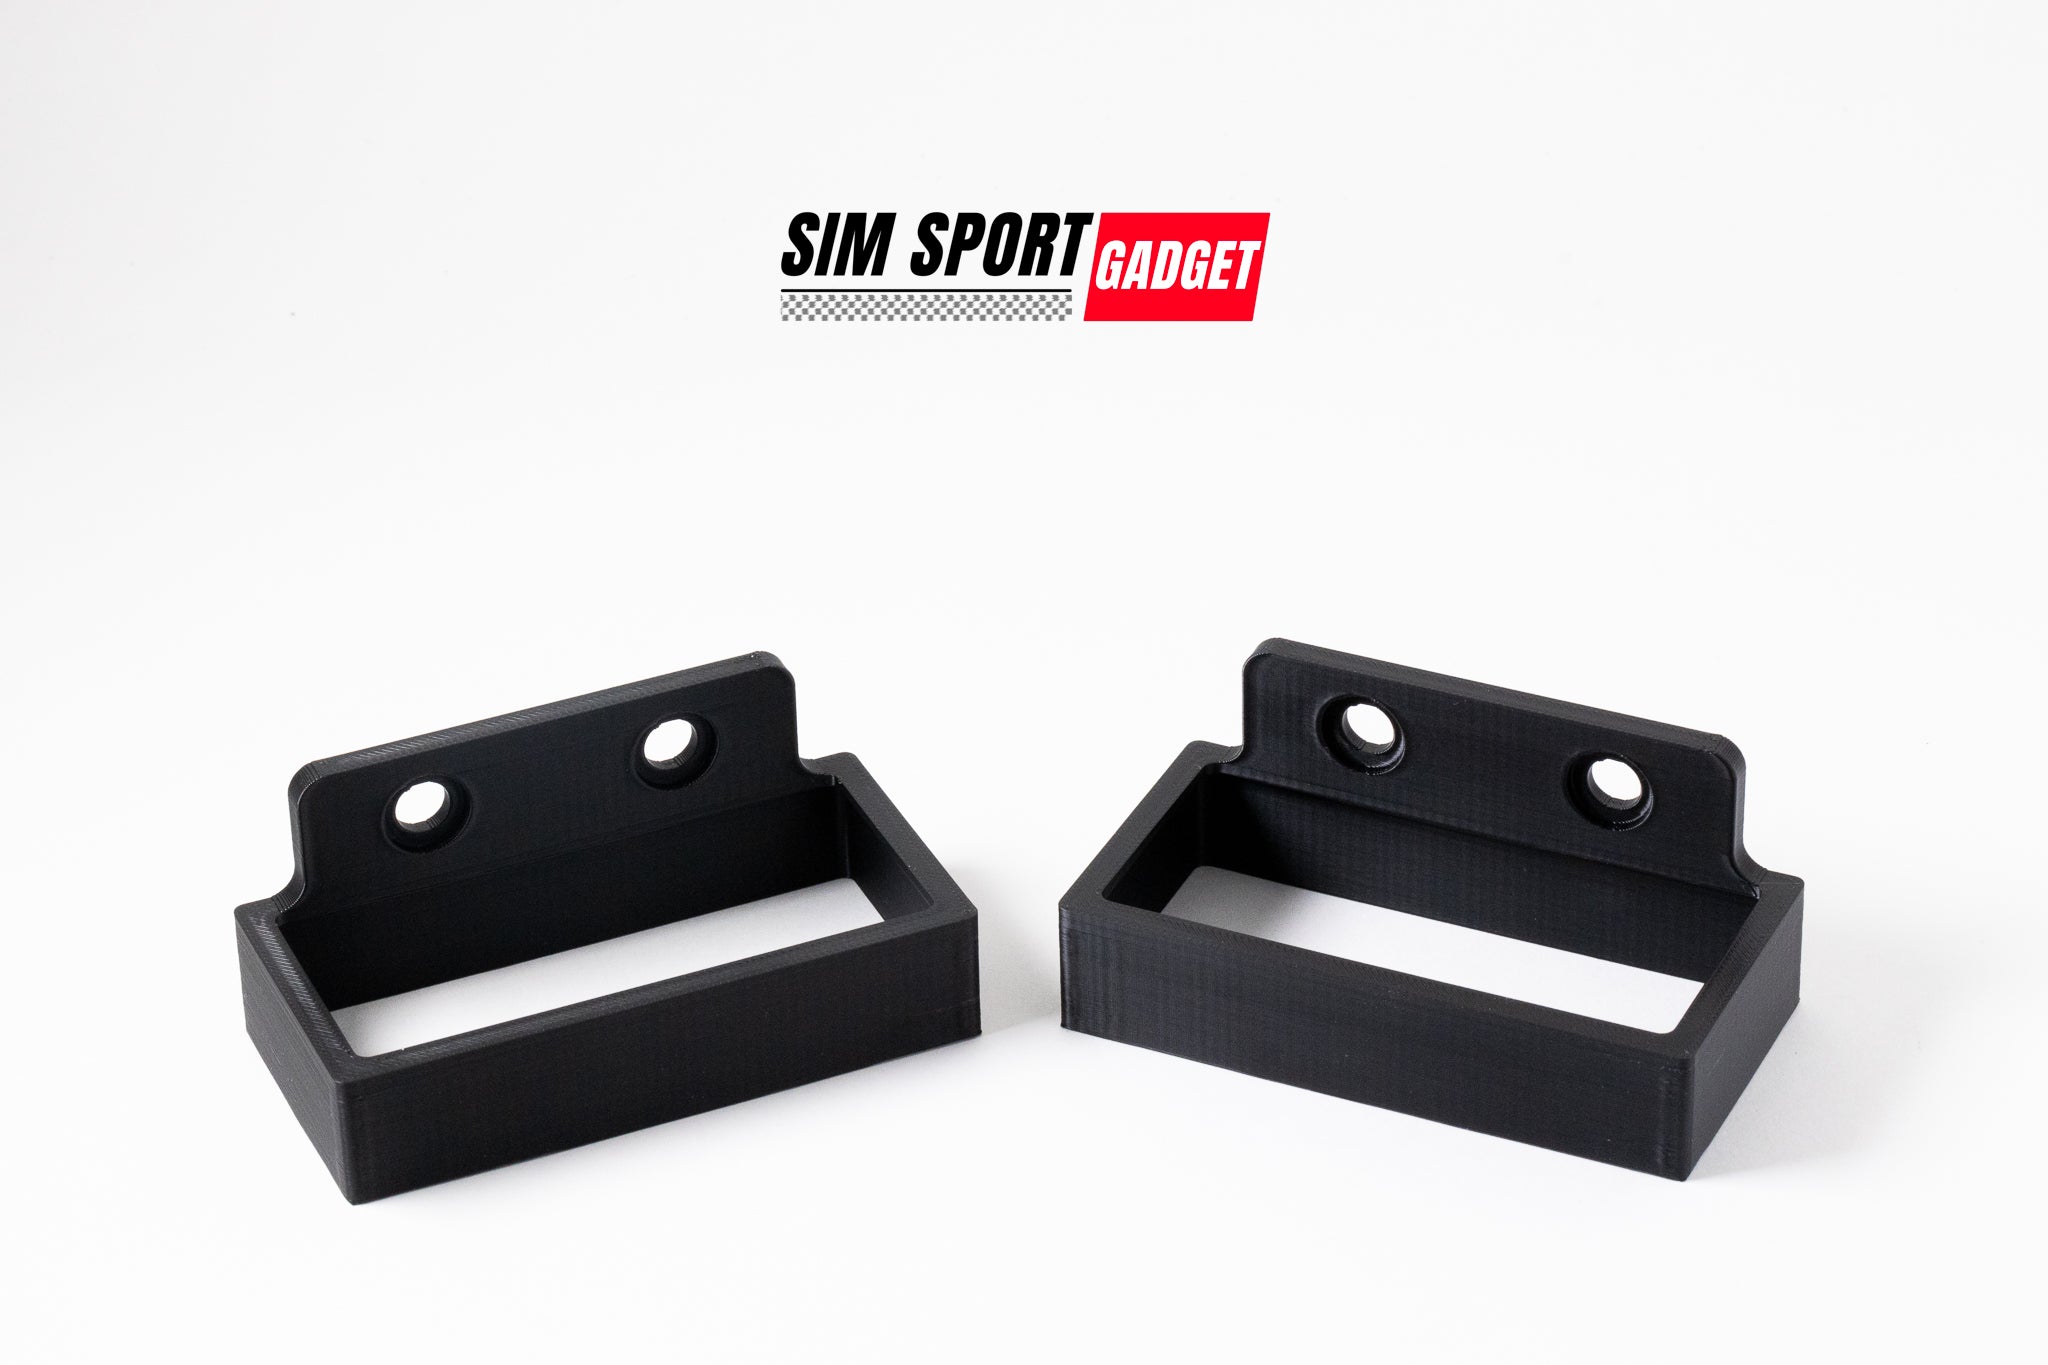 Power Supply Bracket For Simucube 2 Sport